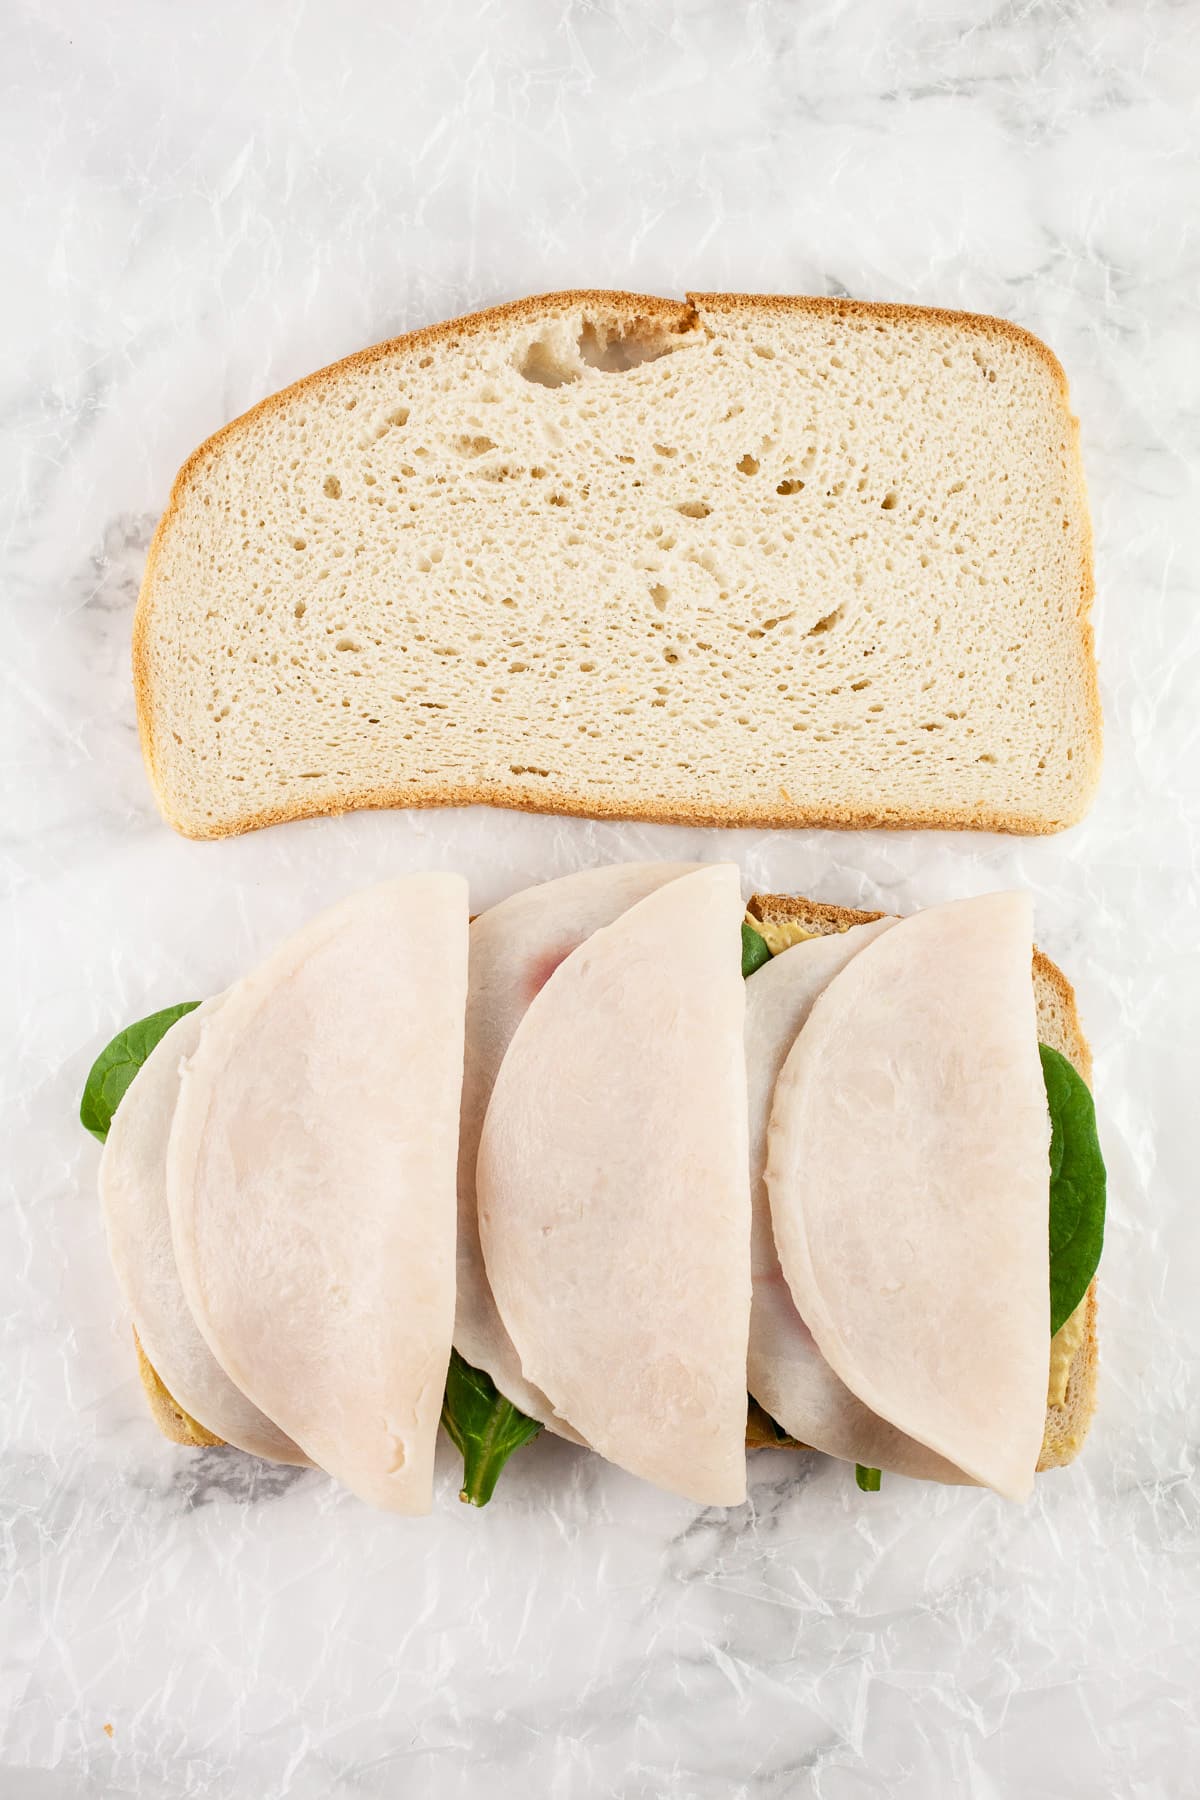 Sliced bread with deli chicken.